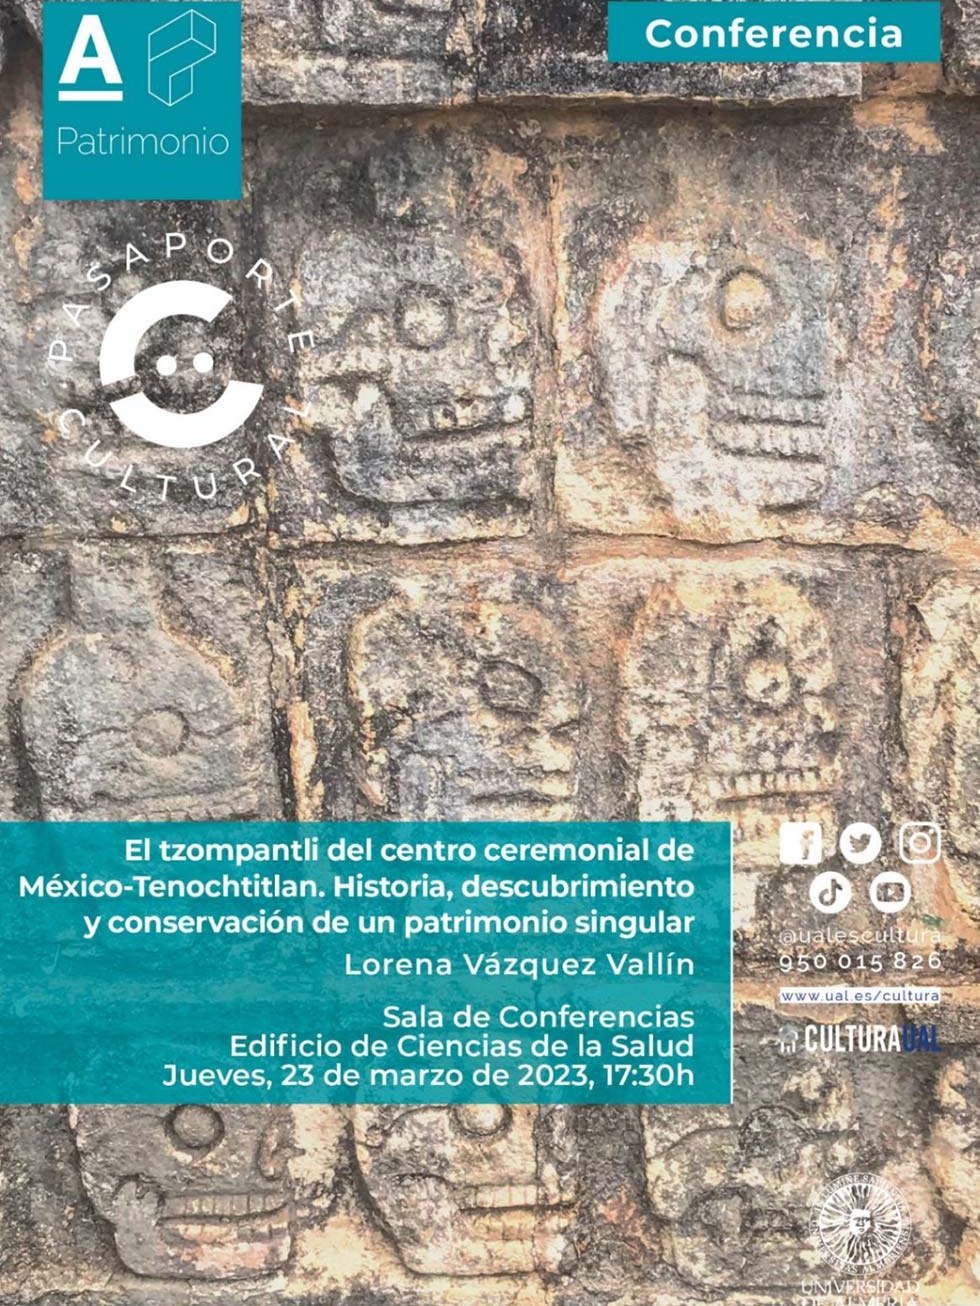 El tzompantli del centro ceremonial de México-Tenochtitlan